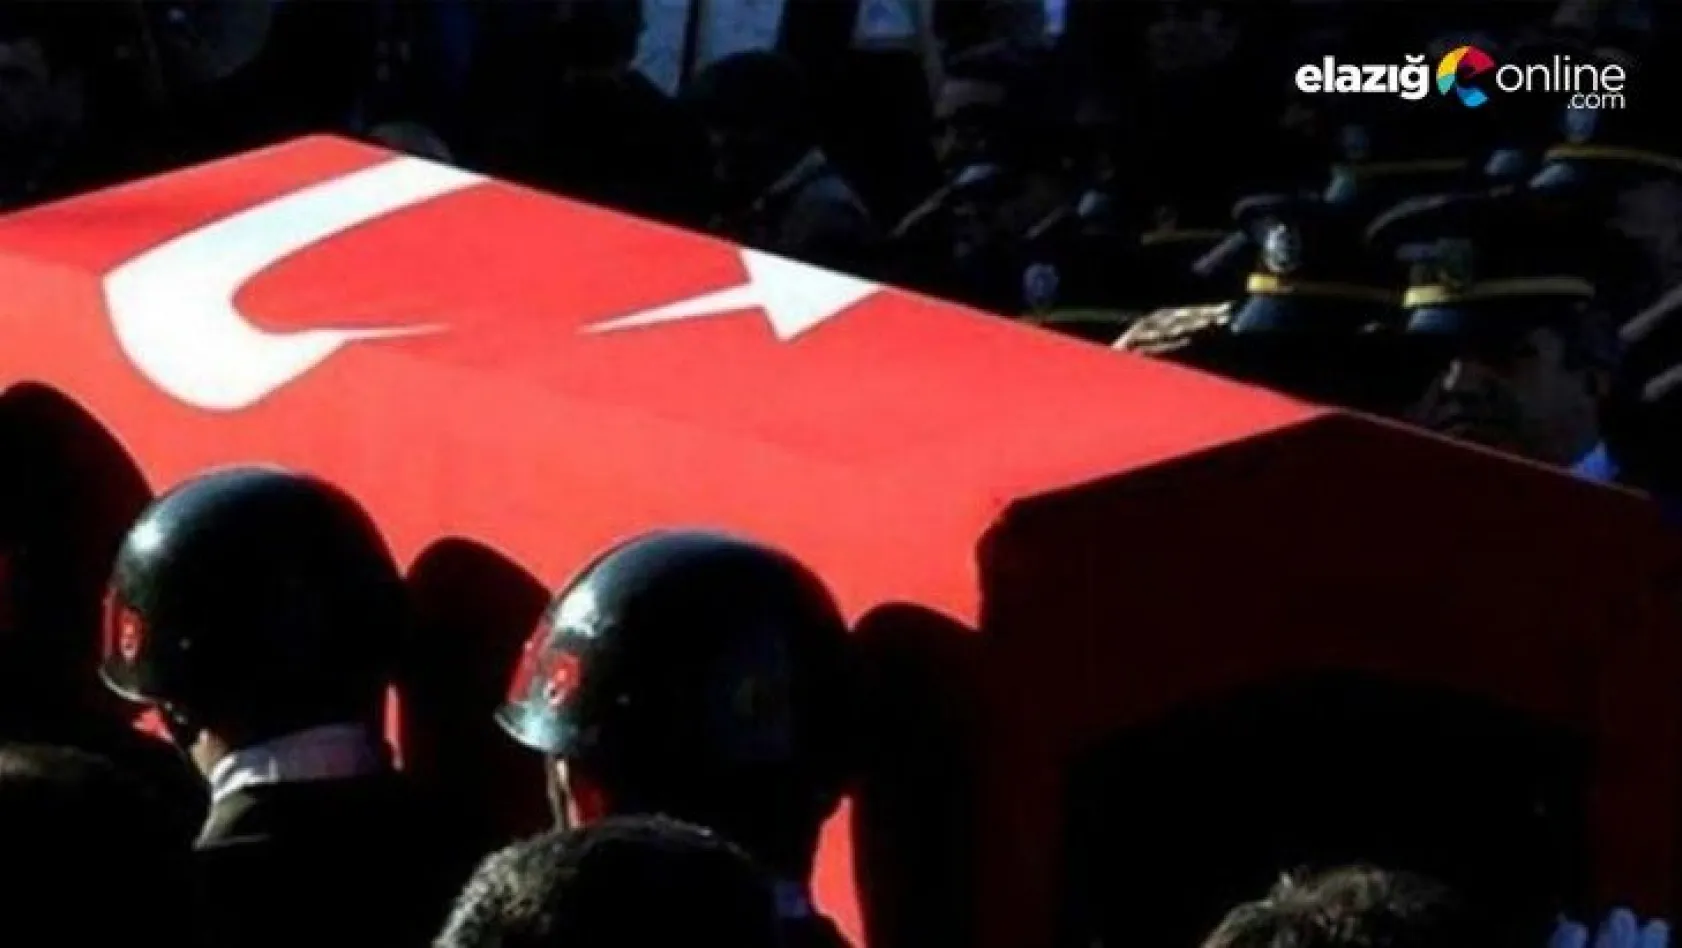 Bingöl'de iki işçi, PKK'lı teröristlerin bombalı saldırısı sonucu şehit oldu